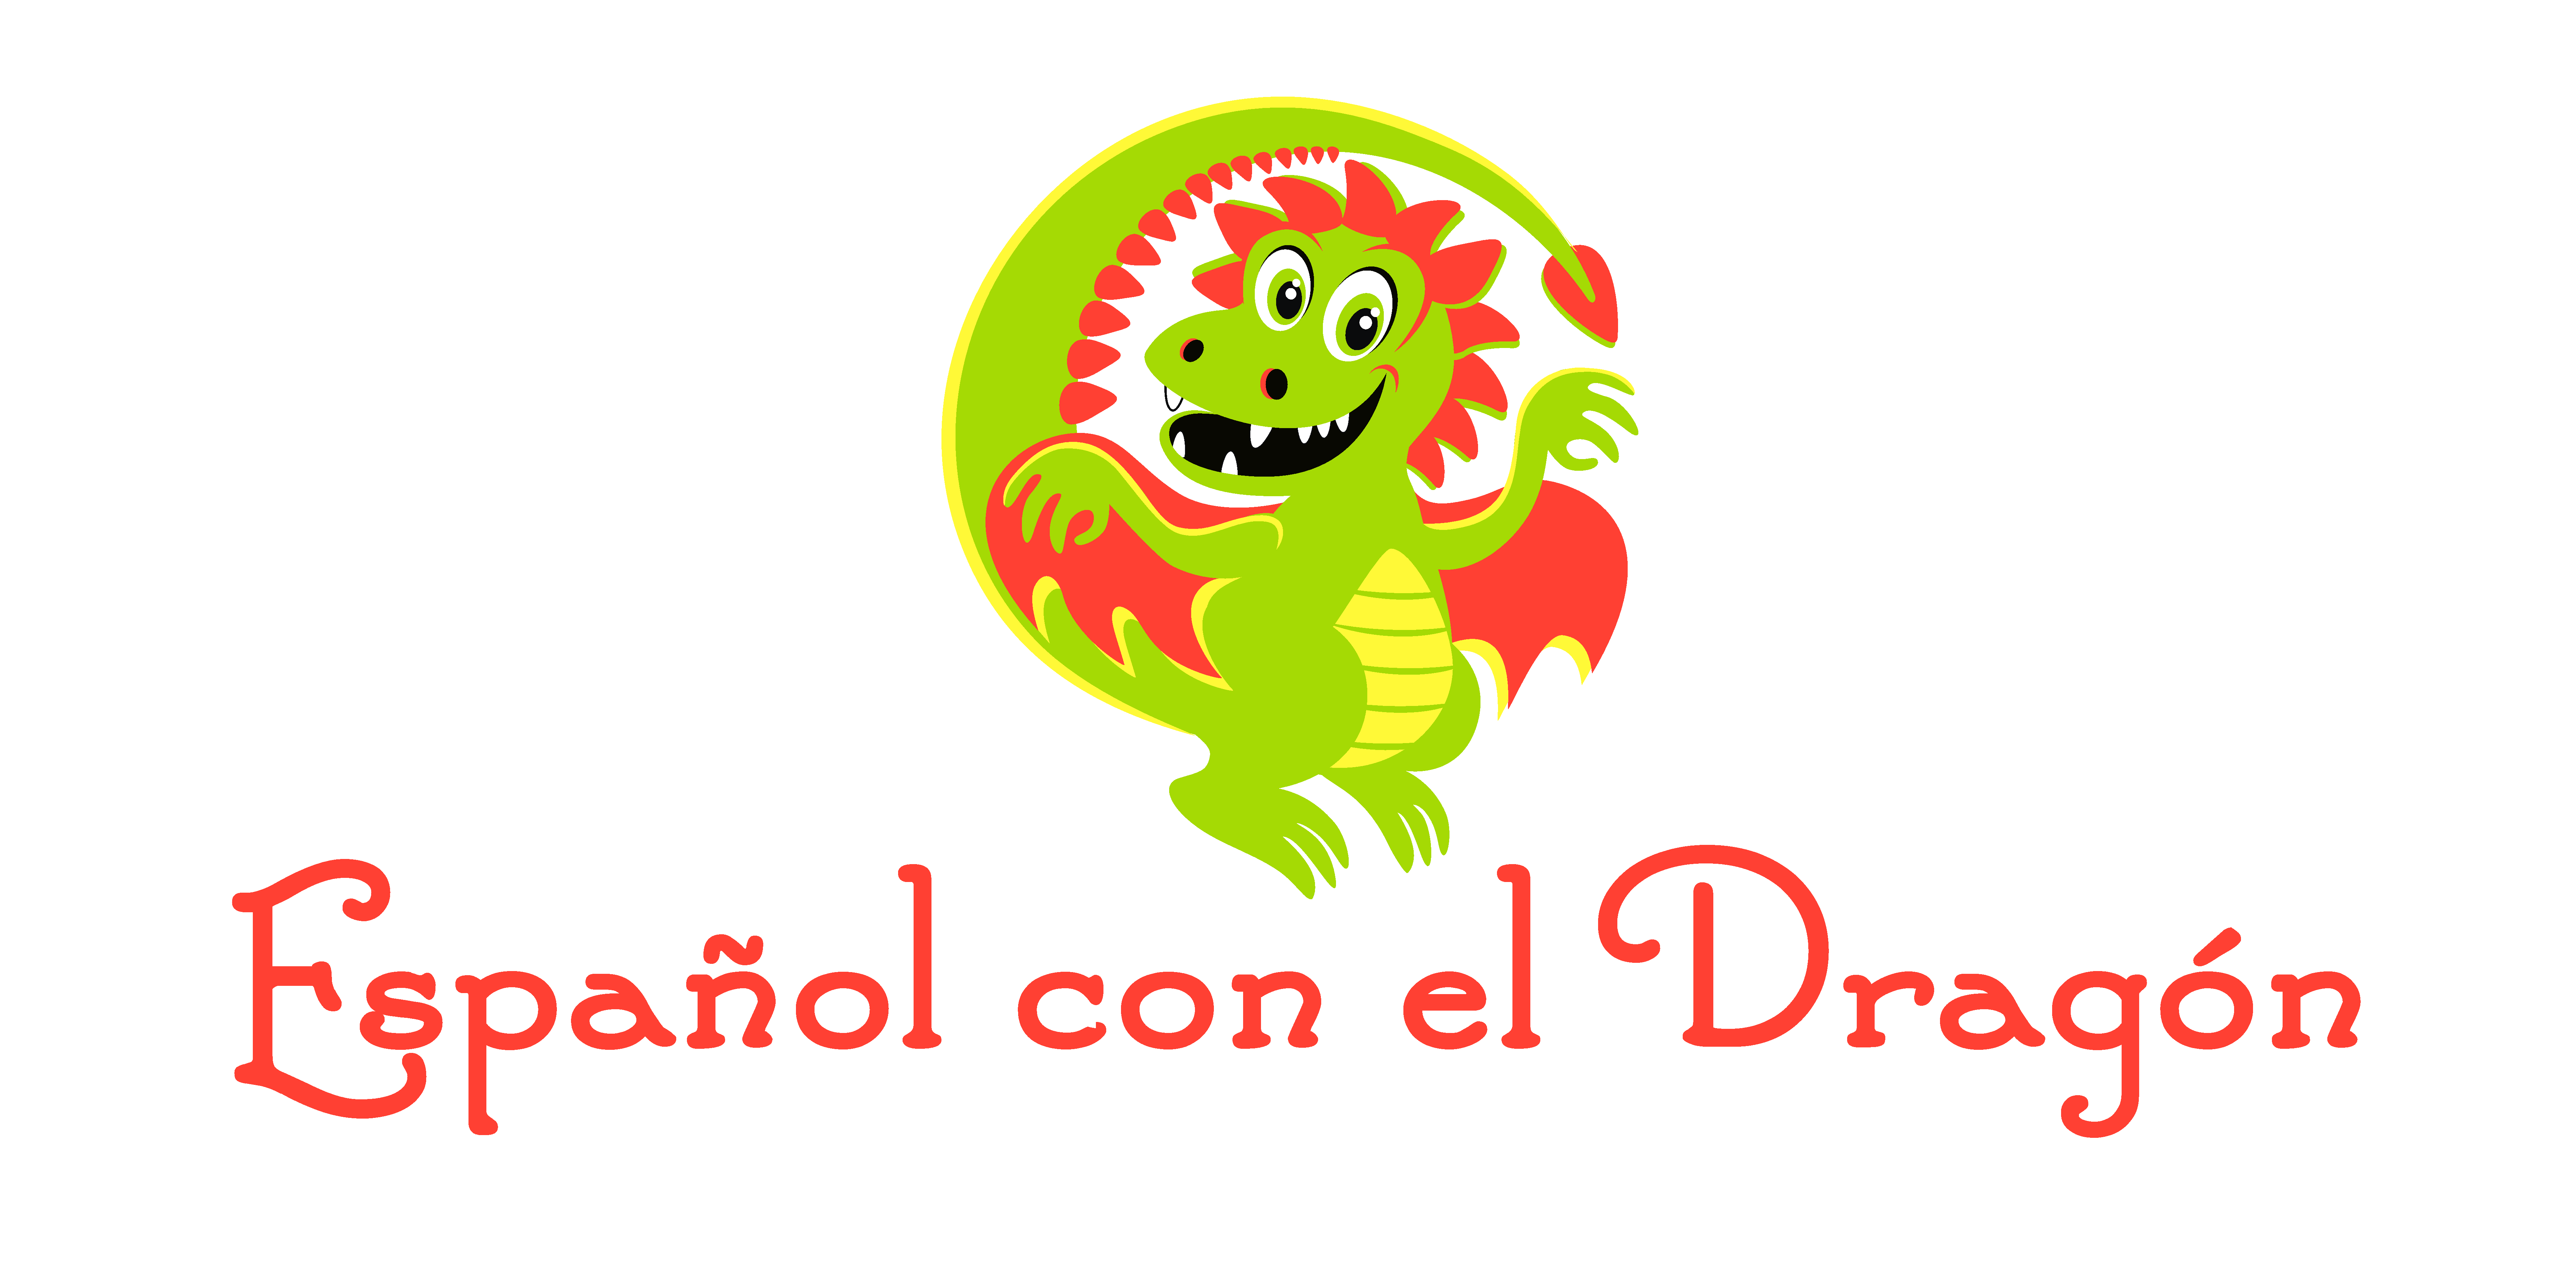 Español con el Dragón